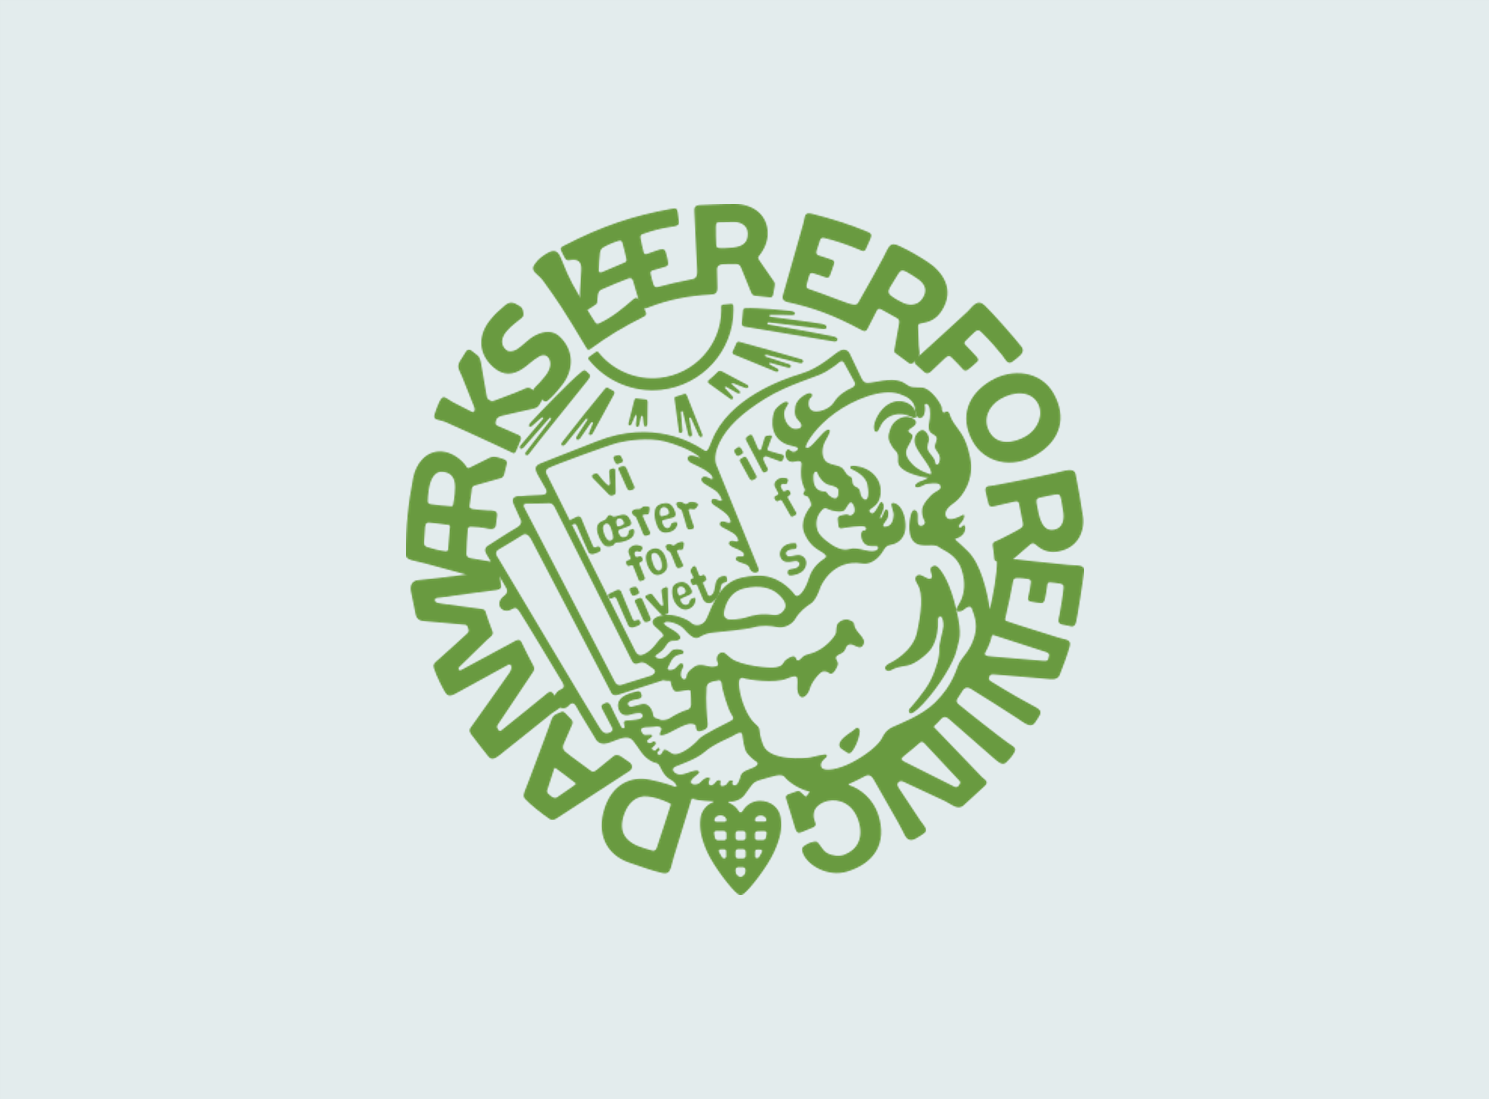 Danmarks lærerforening logo